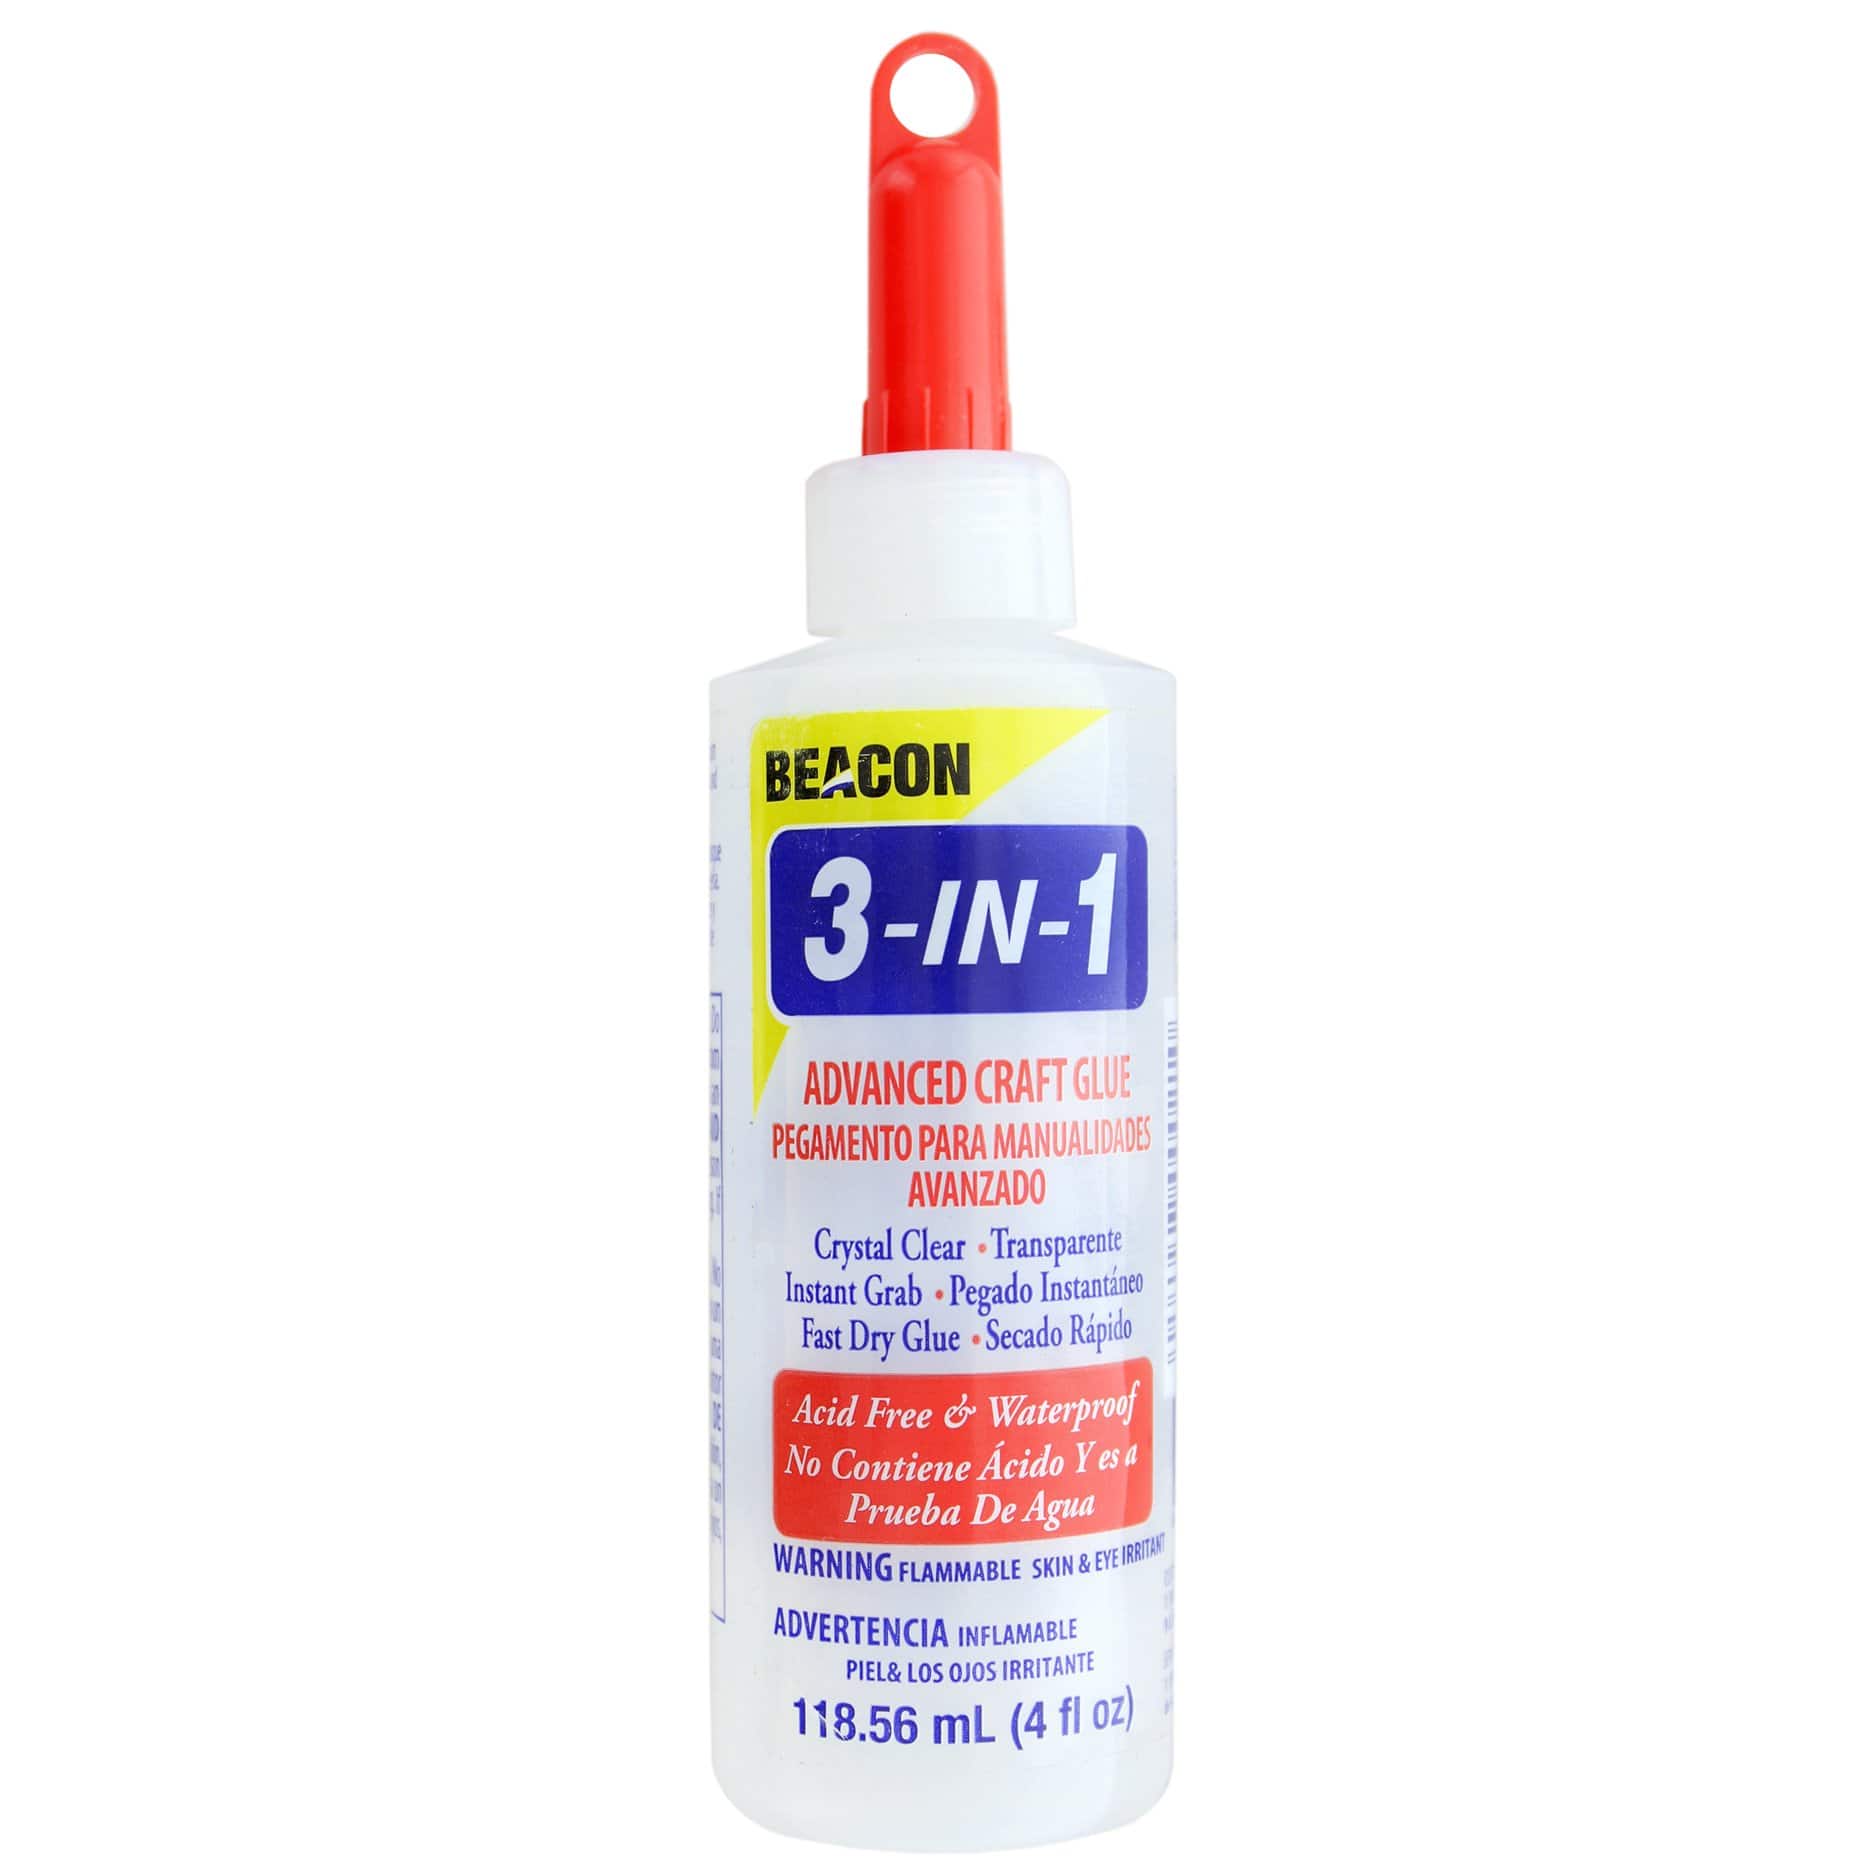 Beacon 3-In-1 Glue Advanced Craft Glue